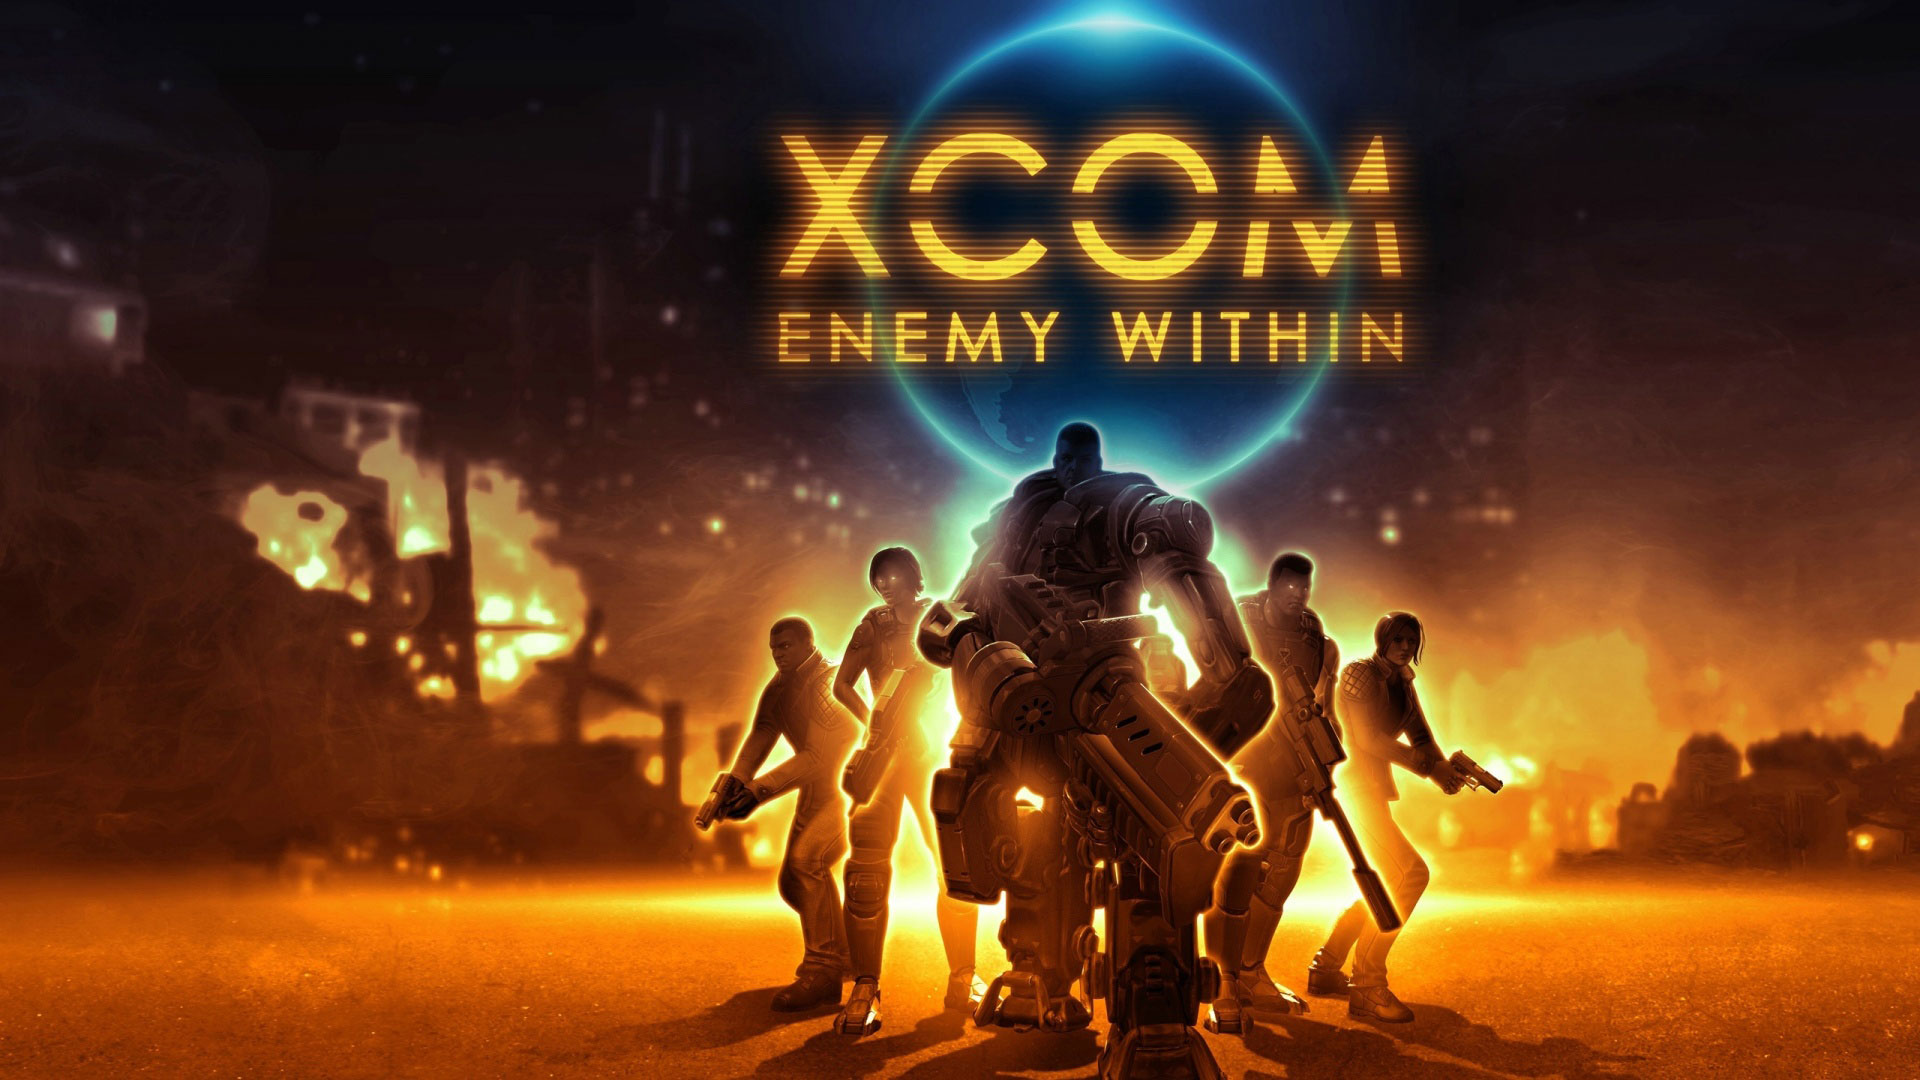 دانلود بازی XCOM Enemy Within 1.6 برای اندروید